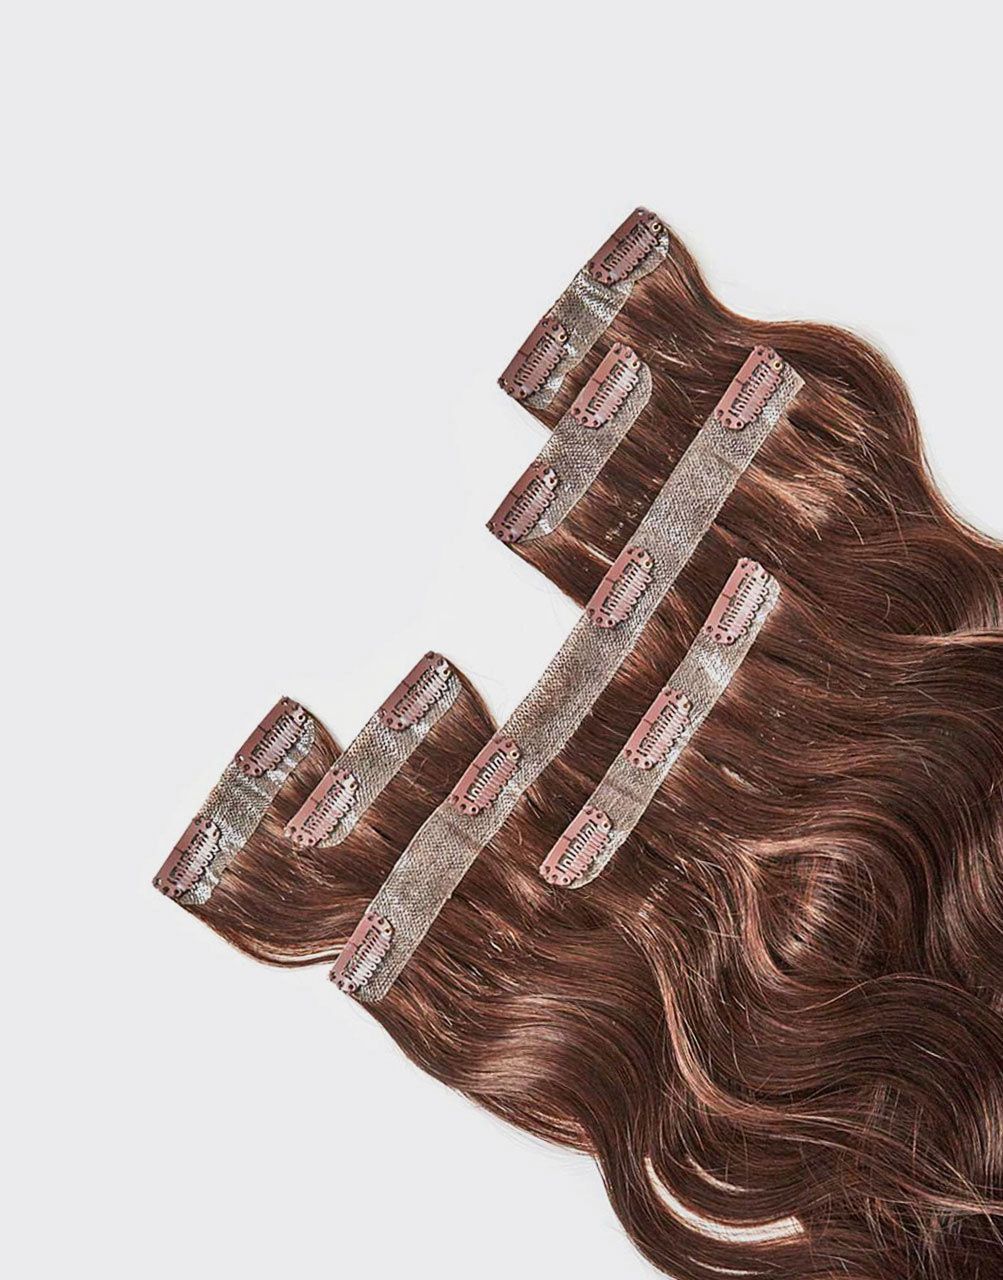 penge pengeoverførsel Tænk fremad 11 Best Clip-in Hair Extensions 2019 | The Strategist